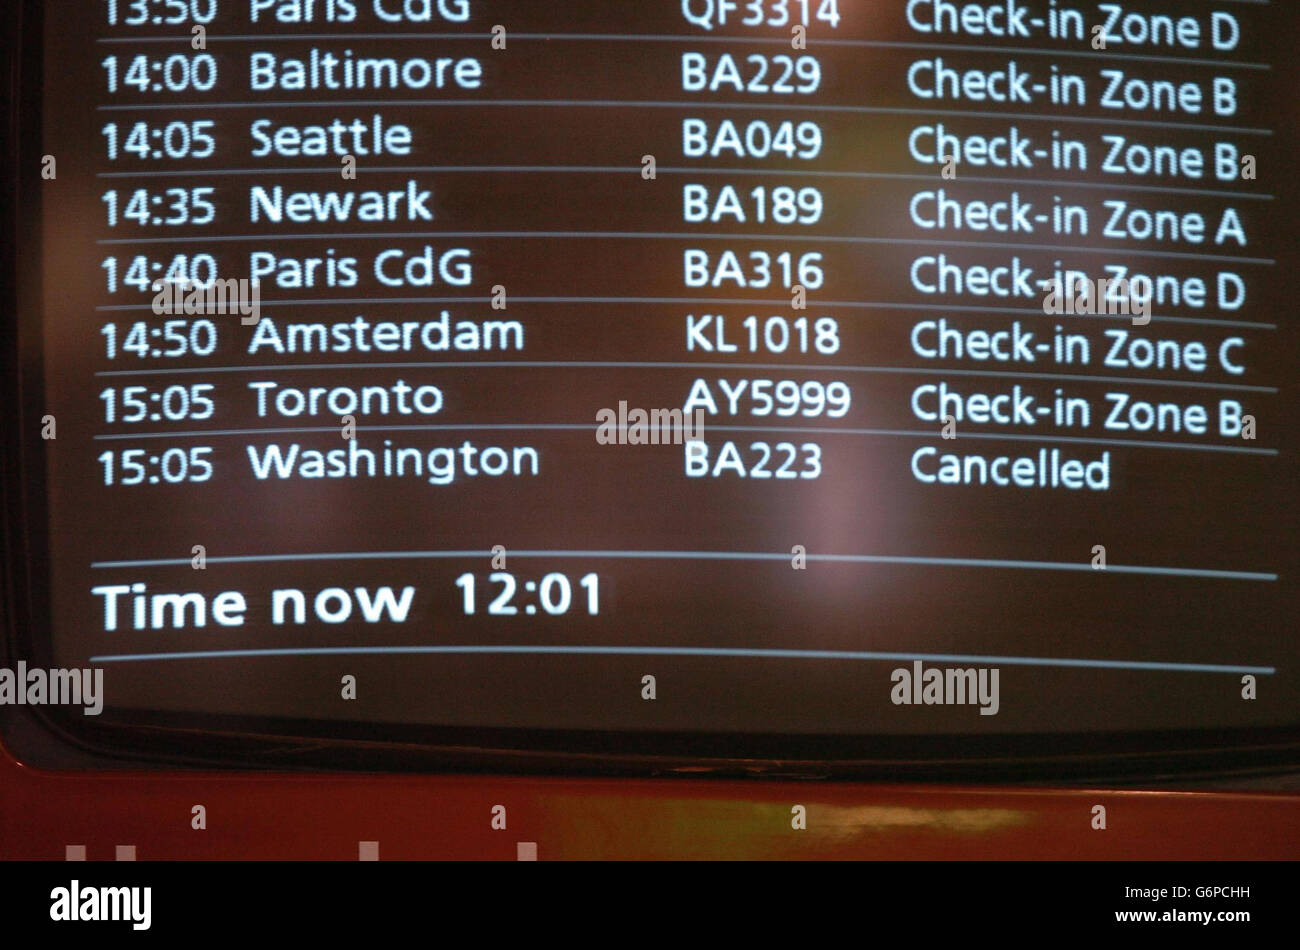 Das Abflugboard von British Airways am Flughafen Heathrow wurde nach der Absage der BA 223 nach Washington aufgrund von Sicherheitsbedenken gestrichen. Hochrangige Regierungsbehörden und die Luftverkehrsunternehmen haben sich nicht zu Berichten geäußert, die auf eine Bedrohung durch al Qaida folgen. Stockfoto